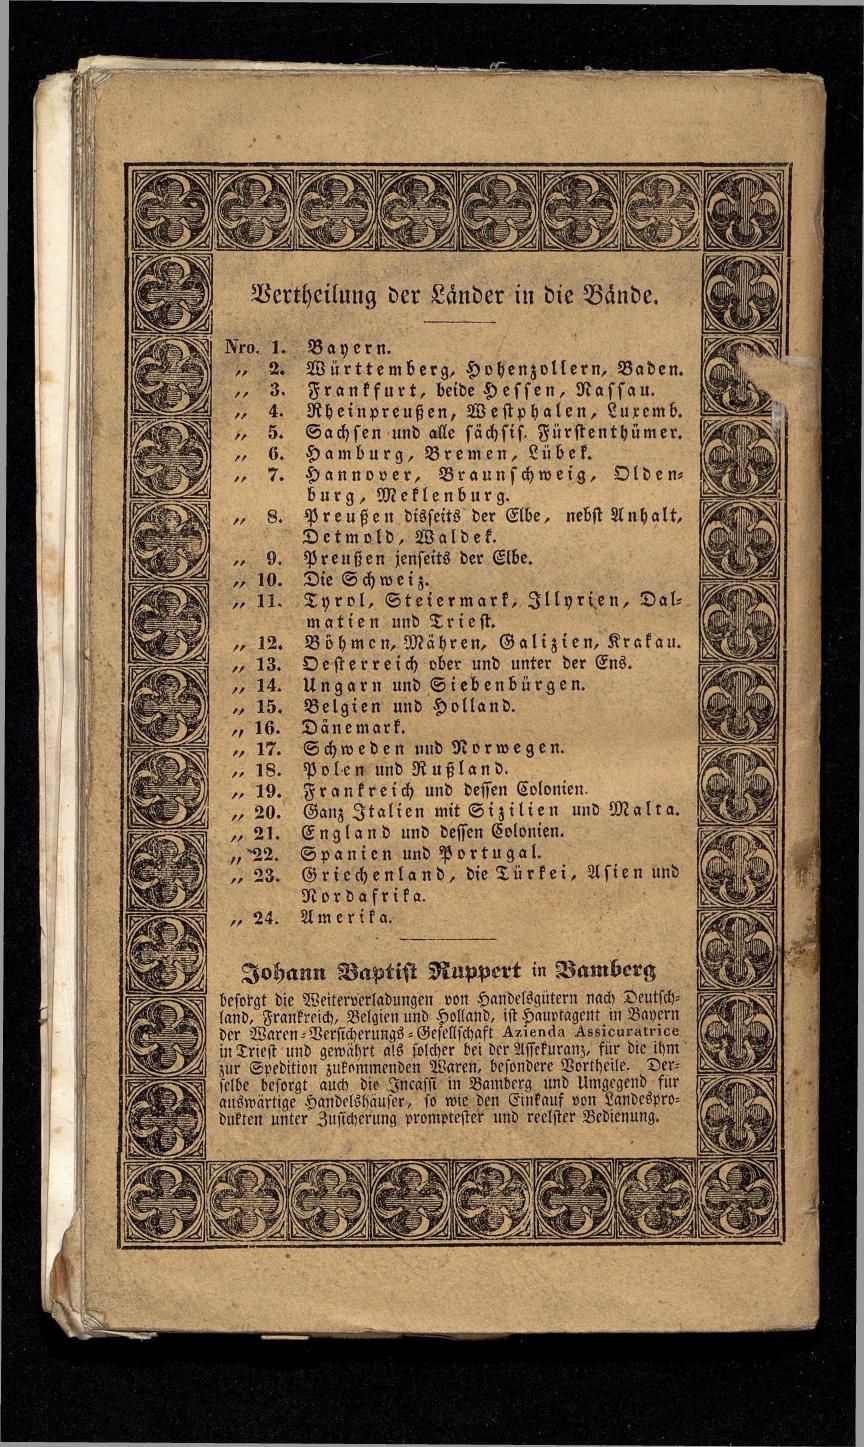 Grosses Adressbuch der Kaufleute. No. 13. Oesterreich ober u. unter der Enns 1844 - Seite 116